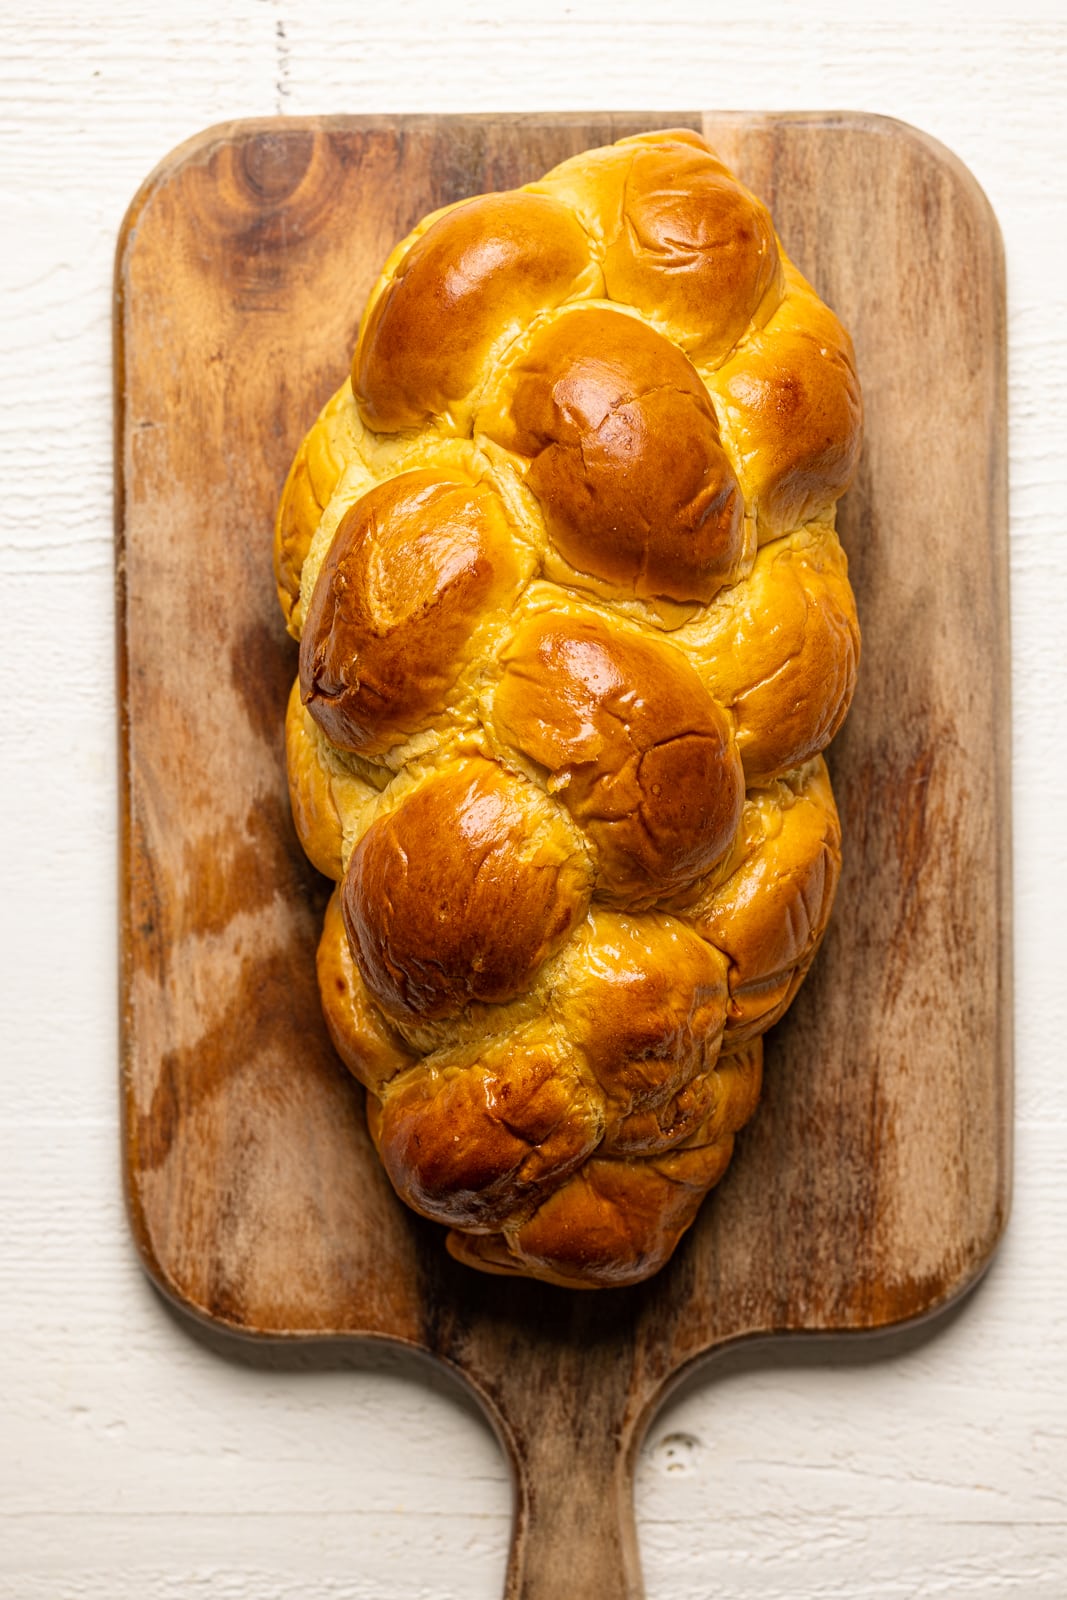 Loaf of braided bread on a cutting board.